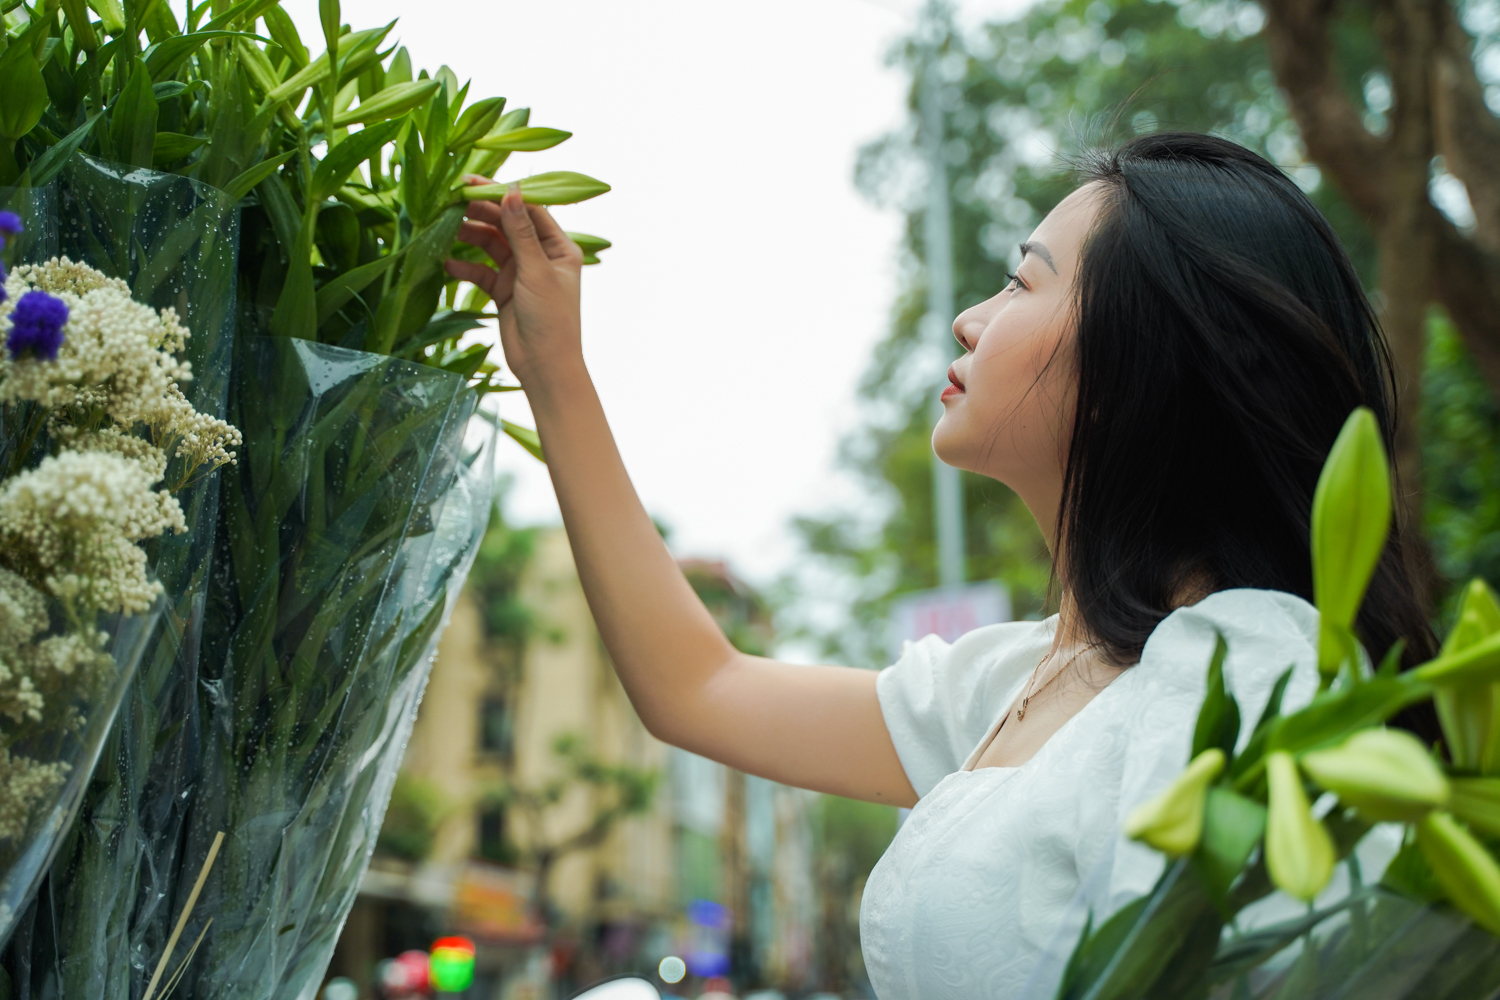 White lilies greet April in Hanoi